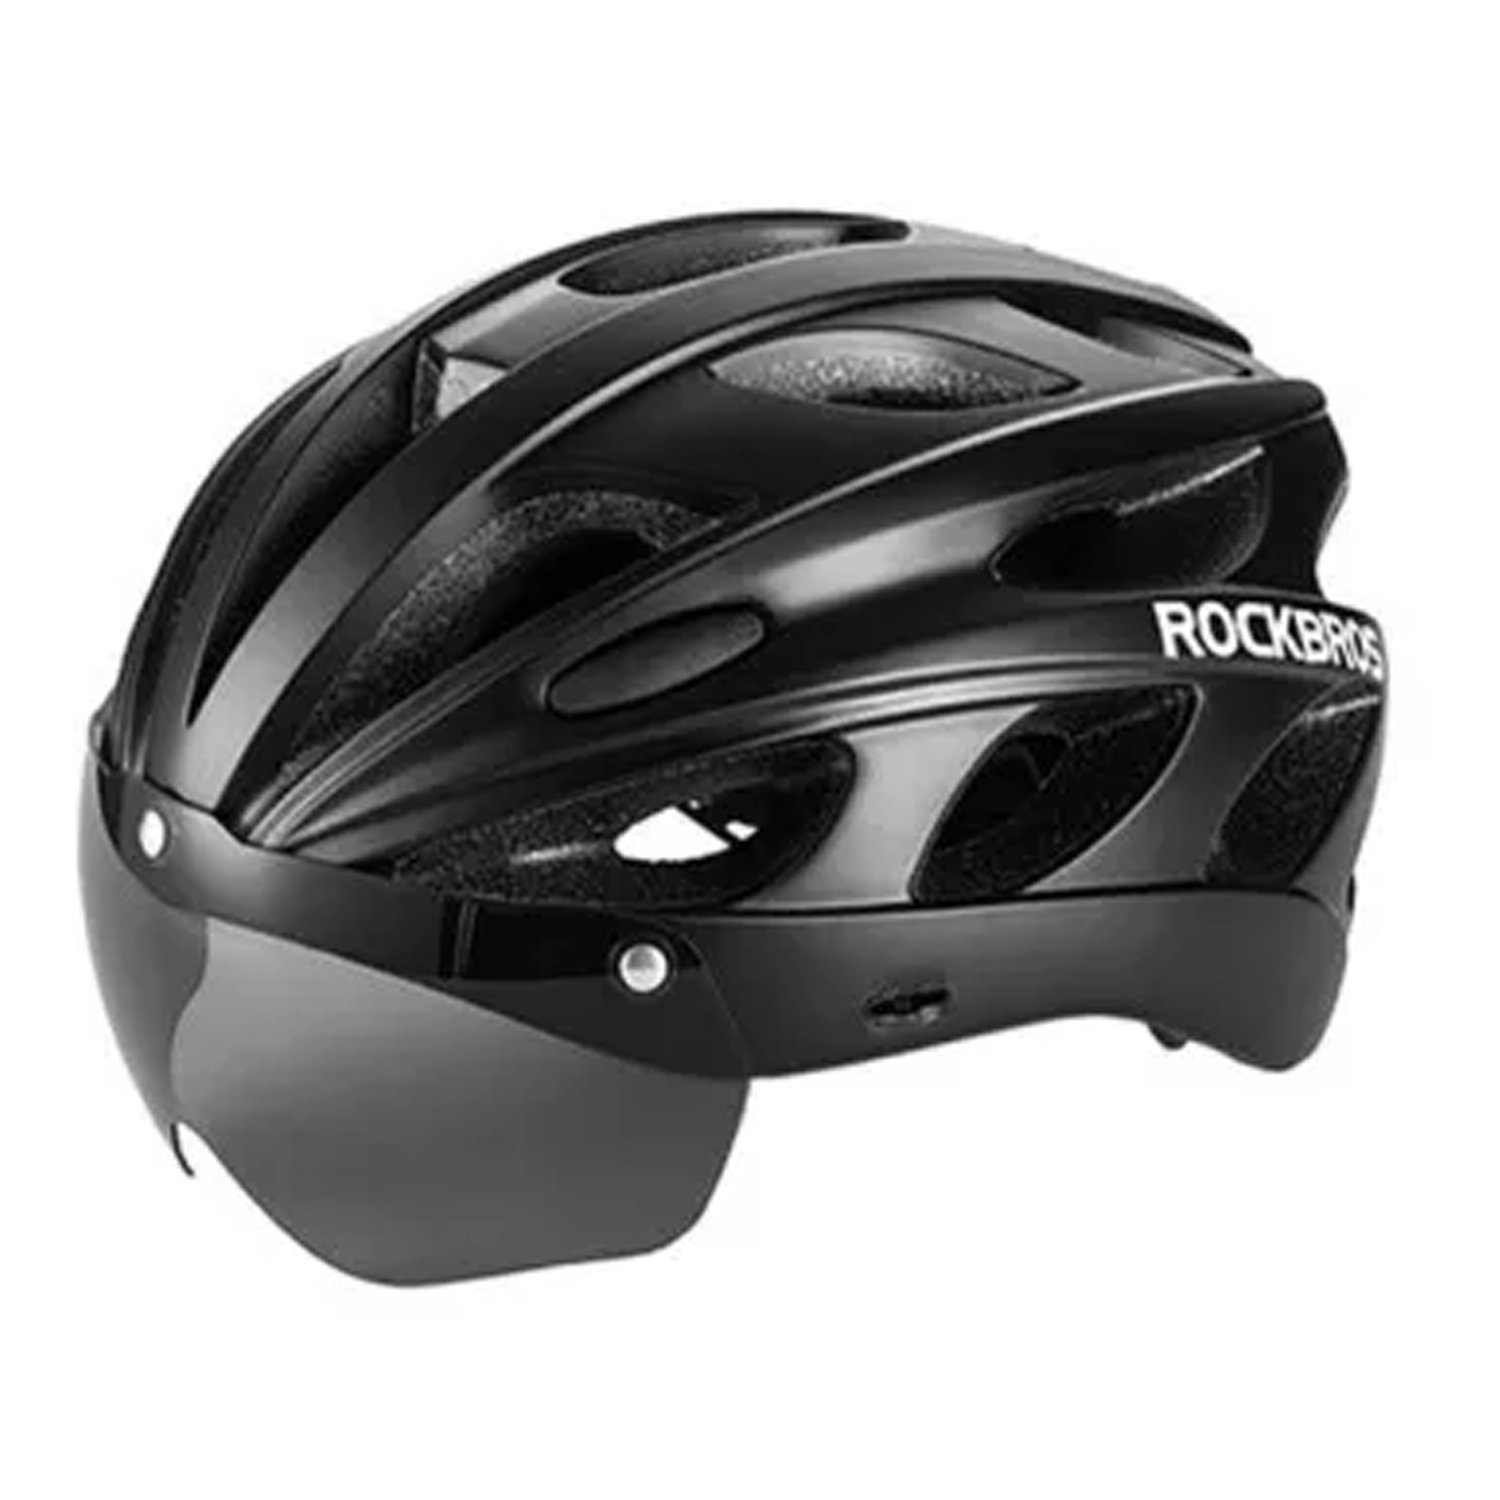 Велошлем ROCKBROS Pottier, со съемным визором, черный, RB_TT-16-BK велошлем rockbros lucien buysse черно белый rb 10110004001